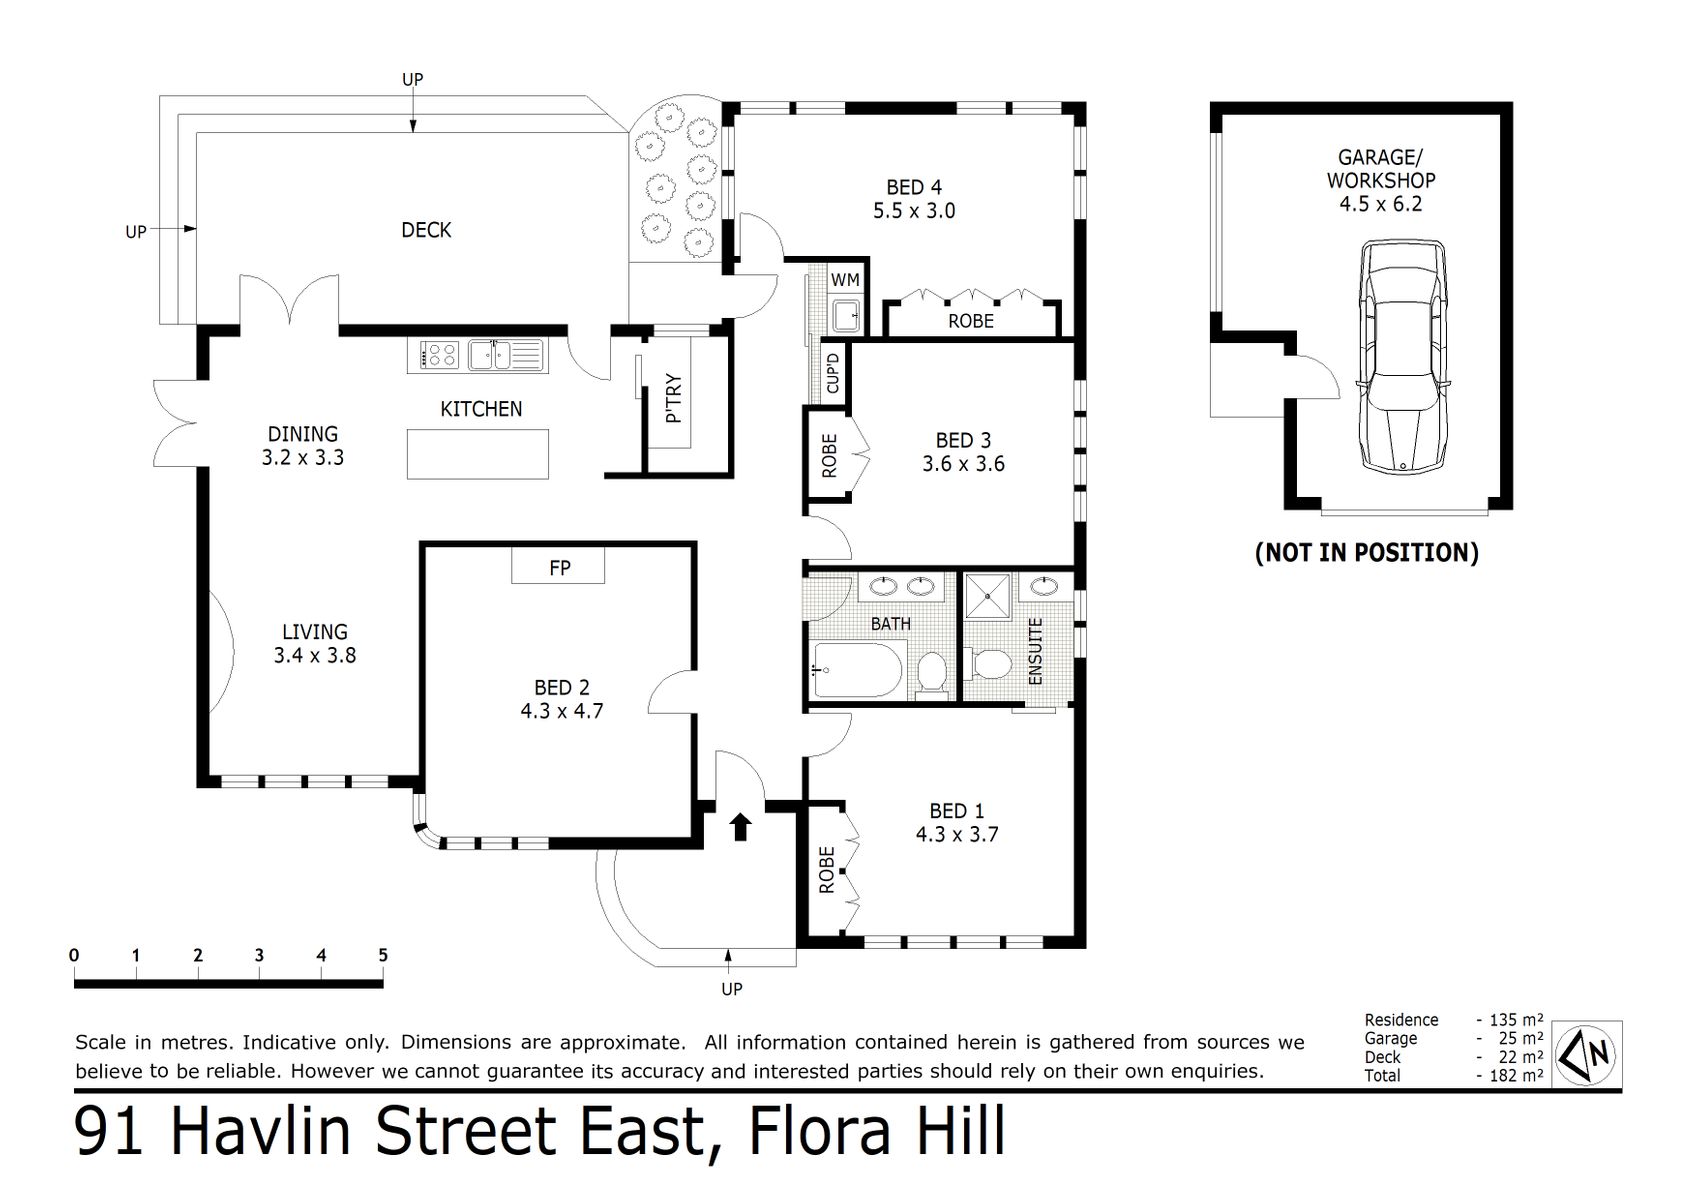 91 Havlin Street E Flora Hill  (10 FEB 2020) 135sqm